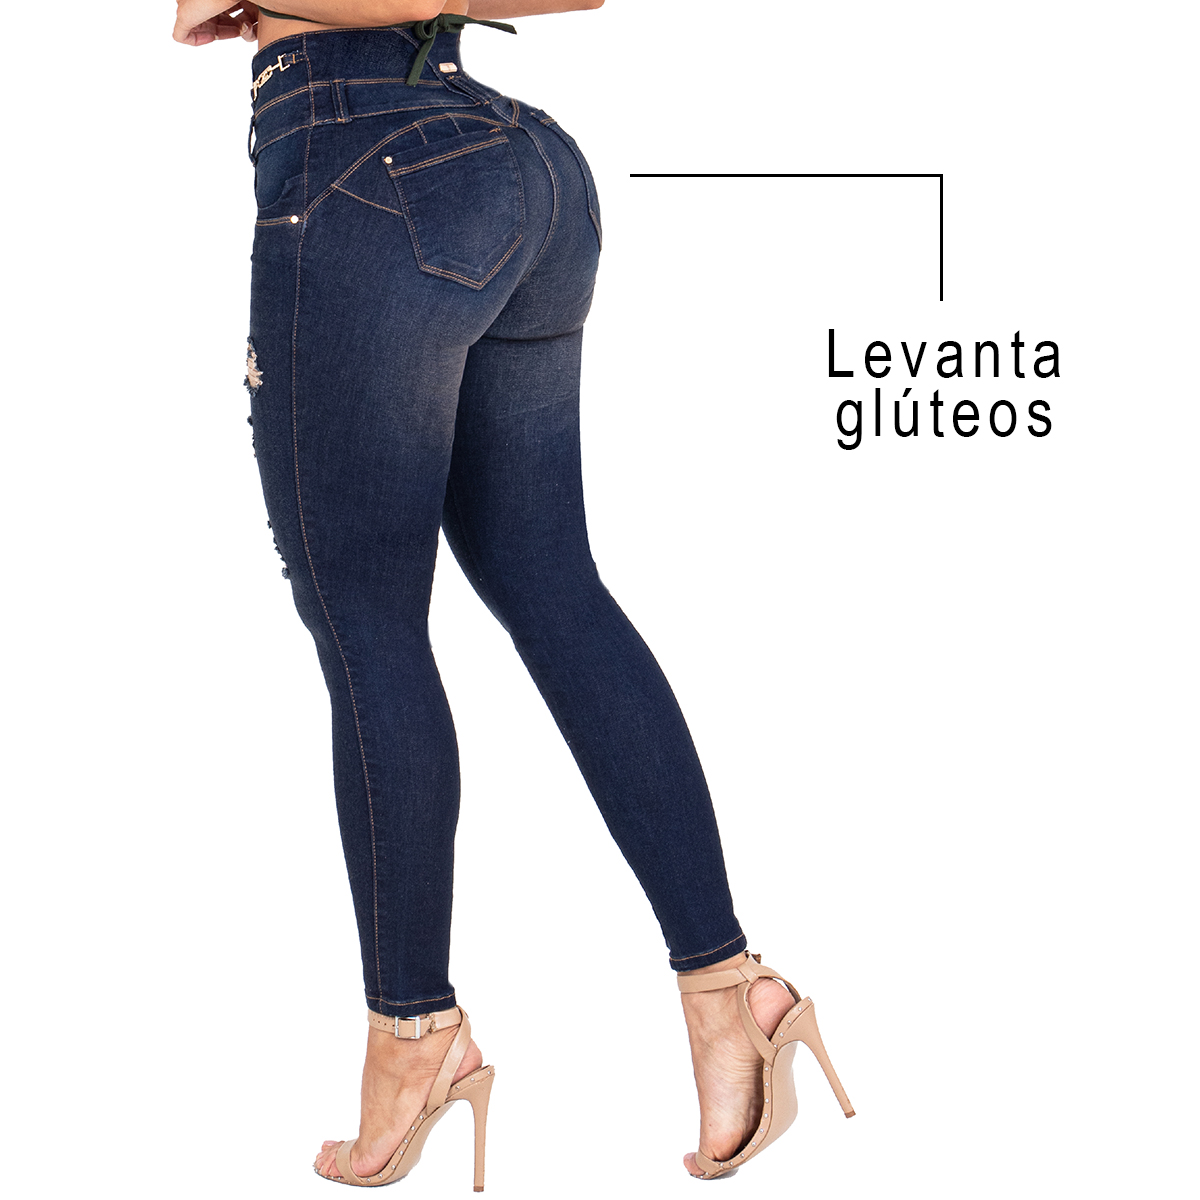 Los jeans colombianos con faja interna cuentan con tres niveles de broches que ayuda a moldear la cintura y controlar el abdomen. Estilizar la figura.